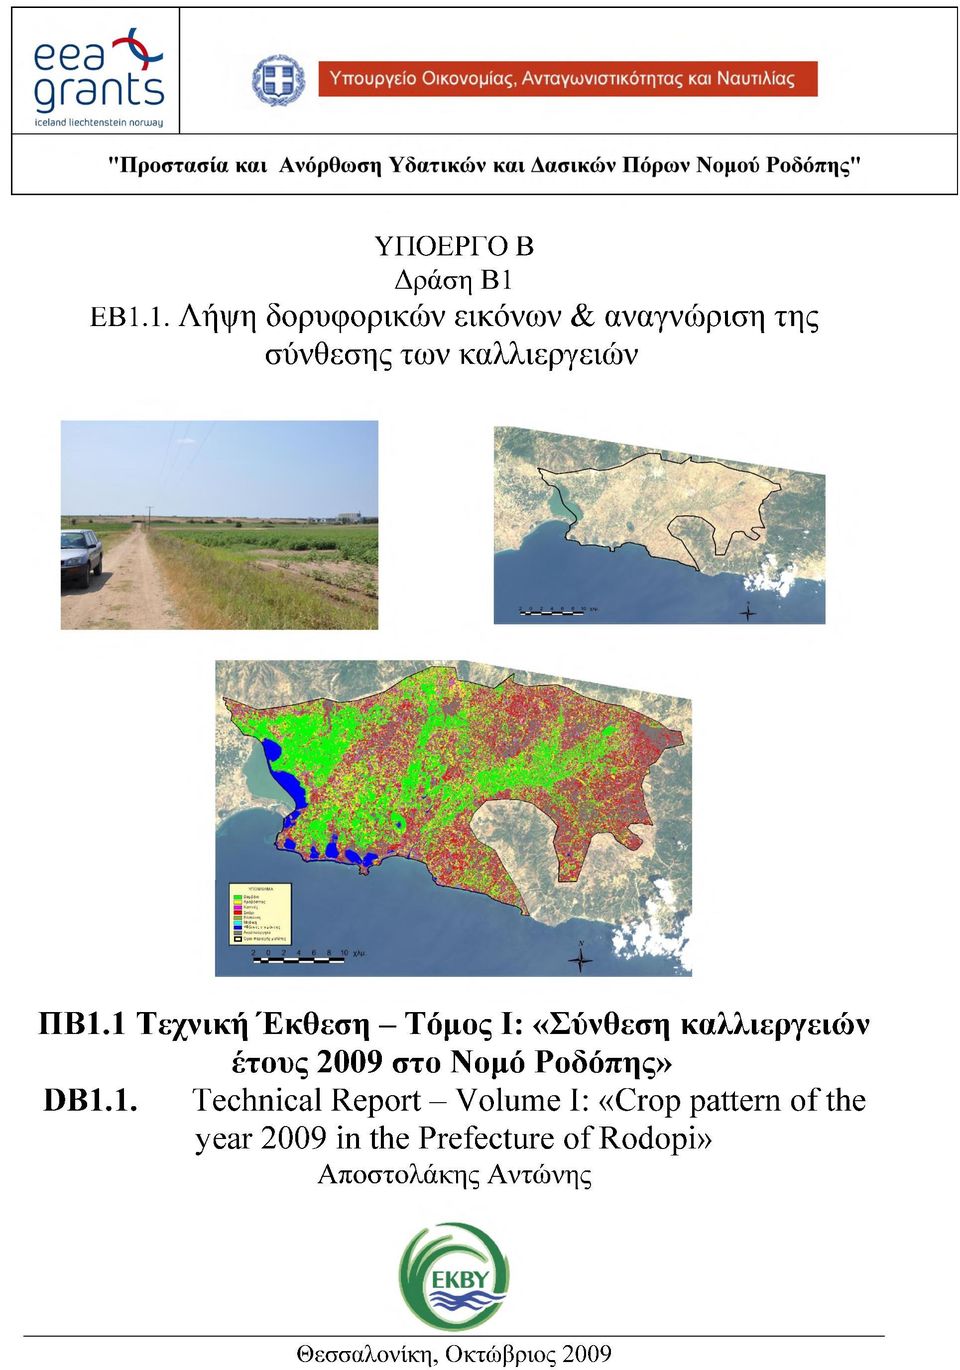 1 Τεχνική Έκθεση - Τόμος Ι: «Σύνθεση καλλιεργειών έτους 2009 στο Νομό Ροδόπης»